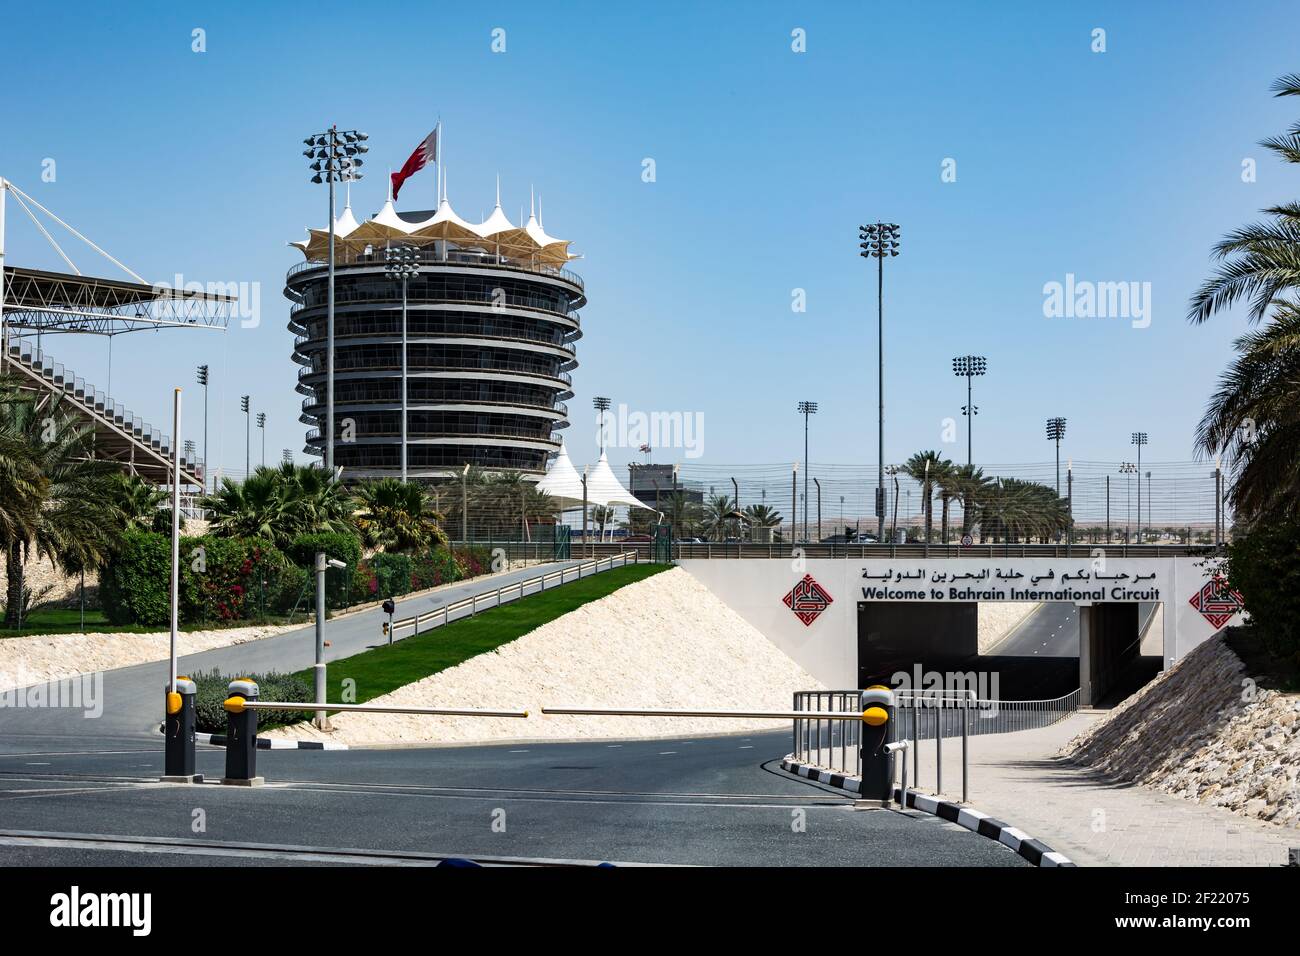 BAHRÉIN, BAHRÉIN - Mar 12, 2017: Una vista de la pista de carreras en Bahréin bajo los cielos azules y el calor del desierto. Foto de stock